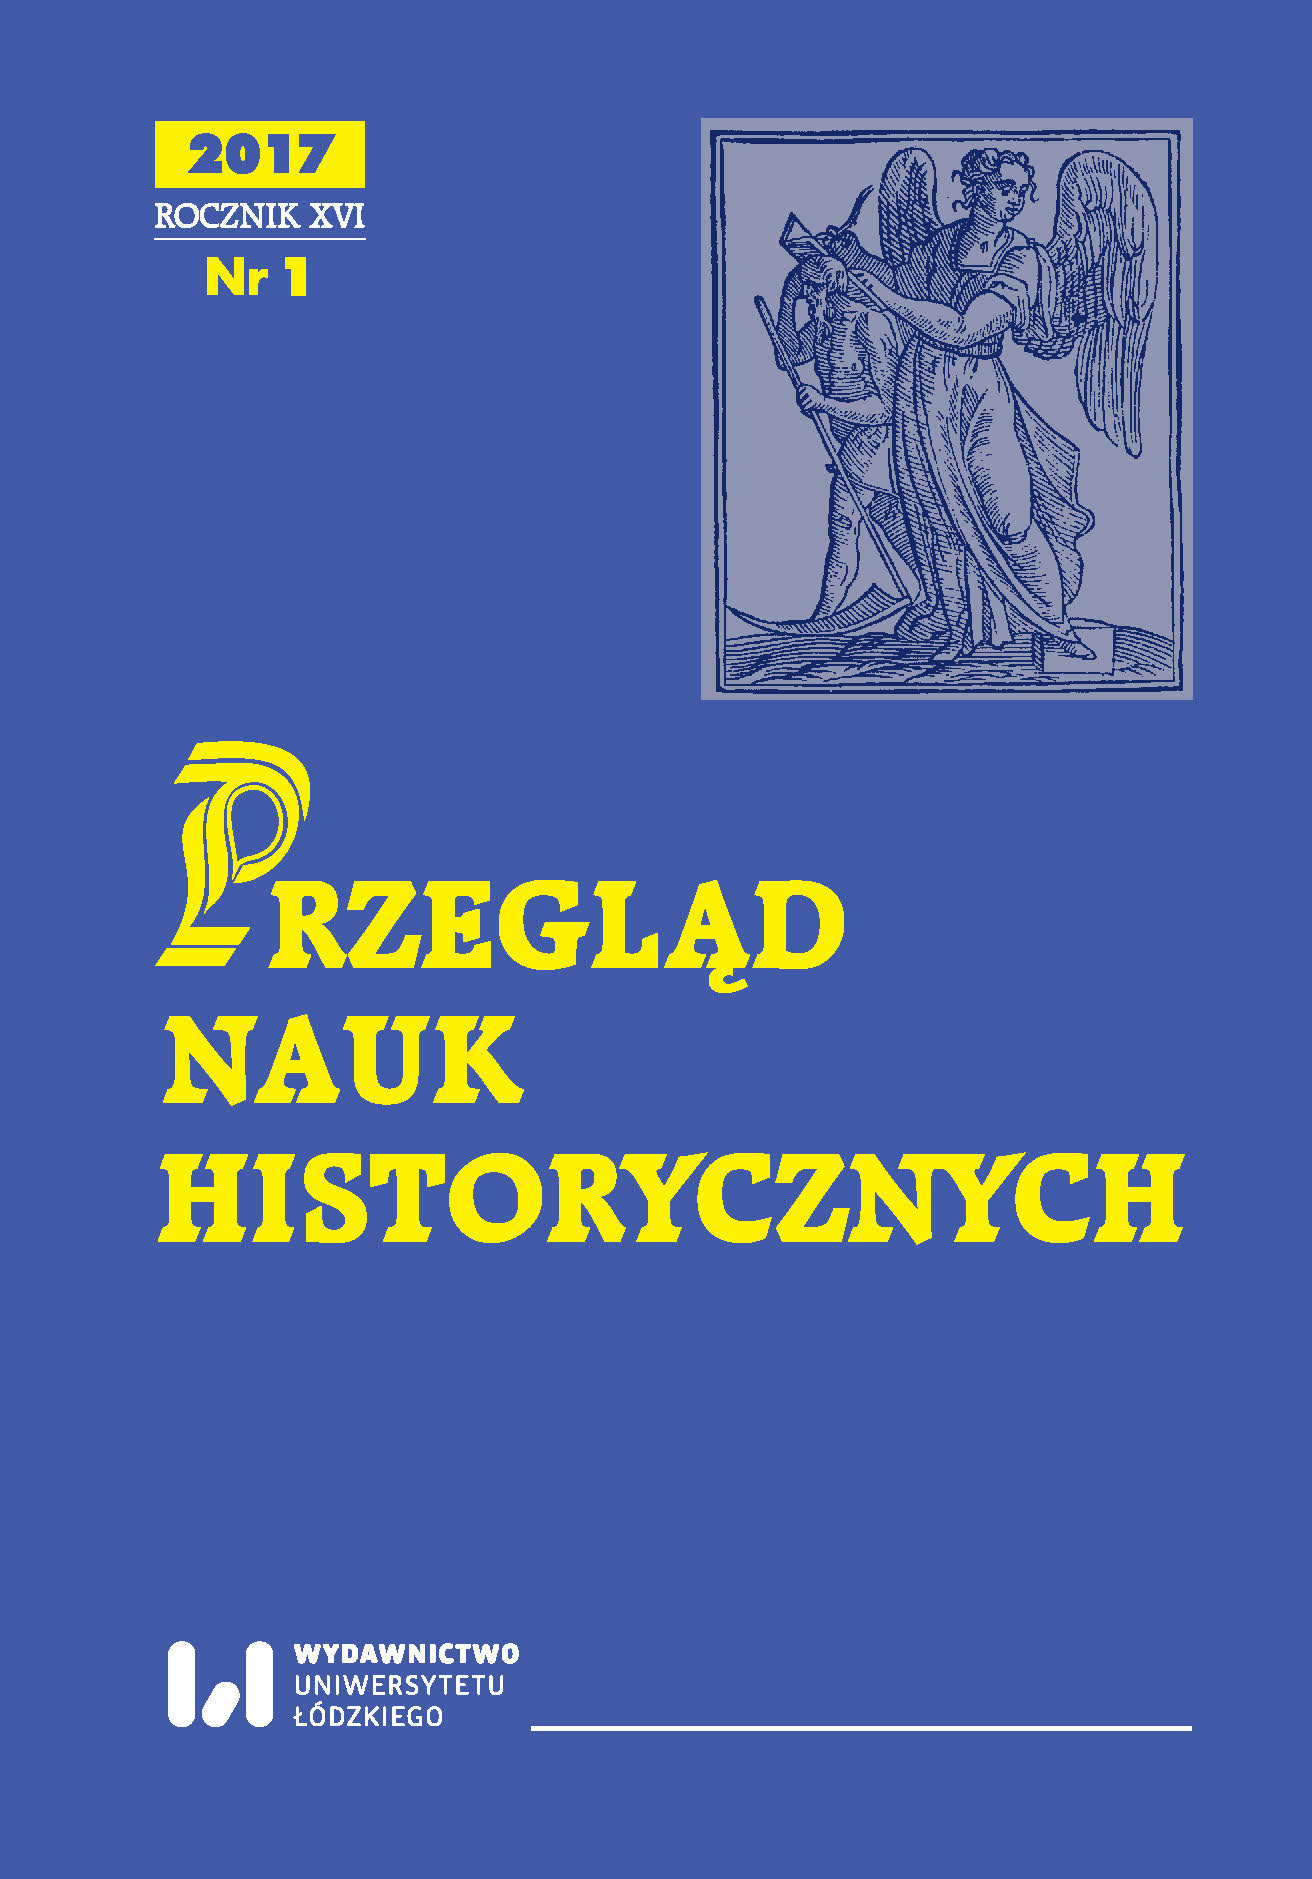 A report from the debates devoted to the latest book by Rafał Ziemkiewicz on Józef Piłsudski (12 May, 2017, Warsaw – 17 May, 2017, Łódź Cover Image